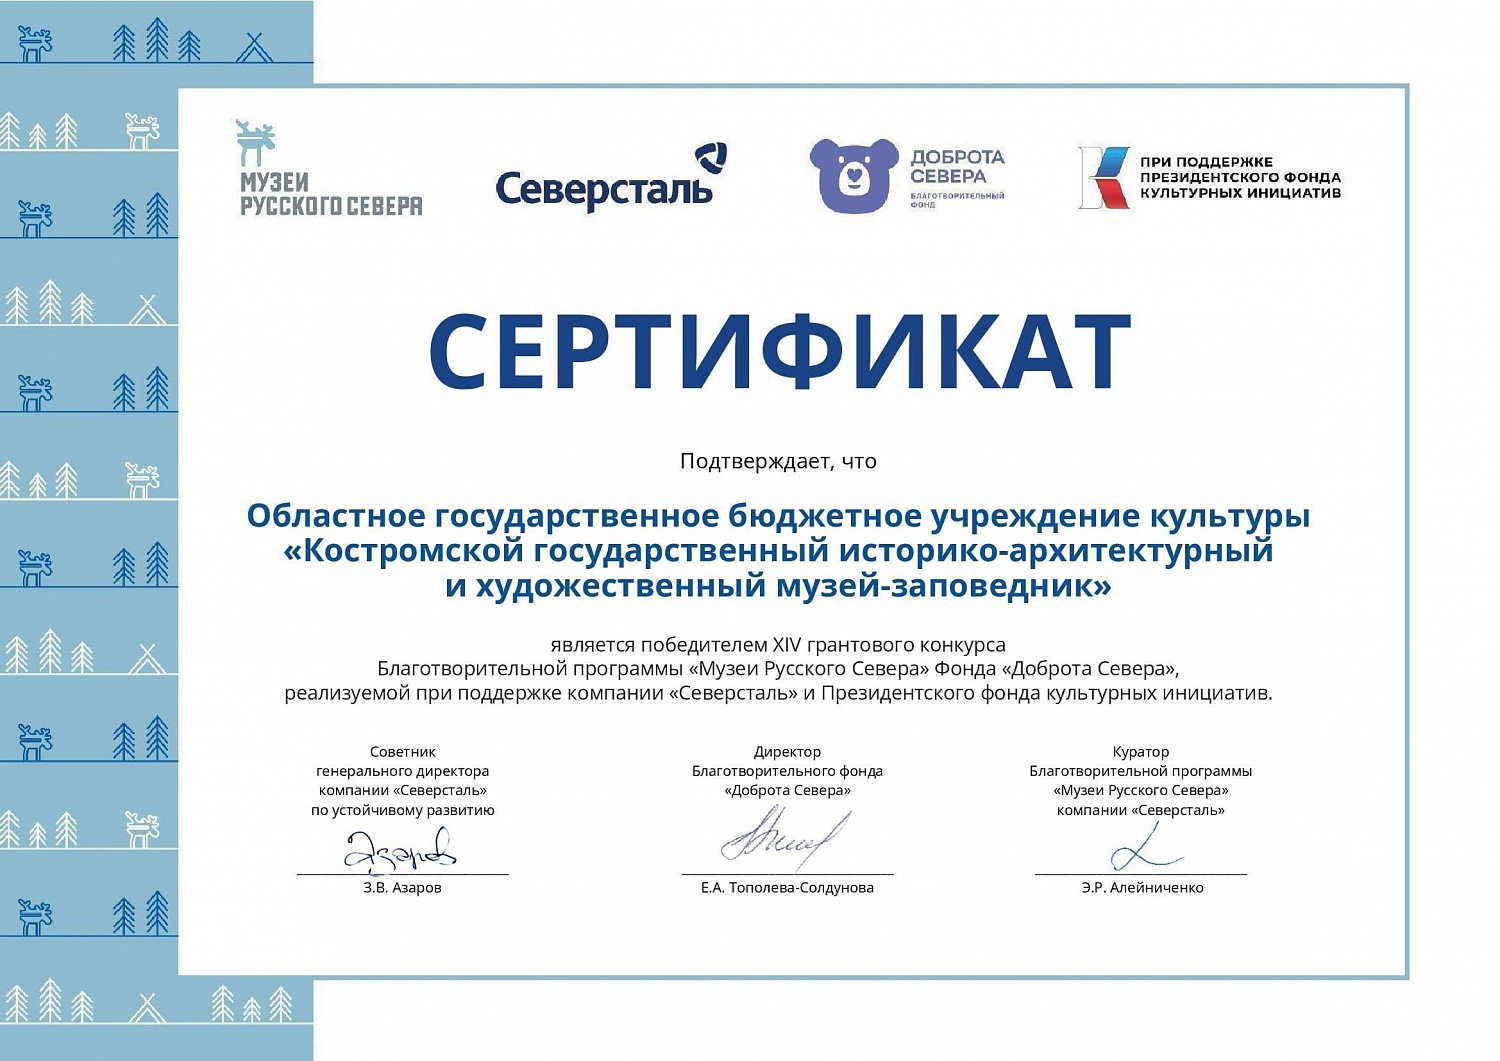 Костромской музей-заповедник одержал победу в грантовом конкурсе проектов «Музеи Русского Севера»